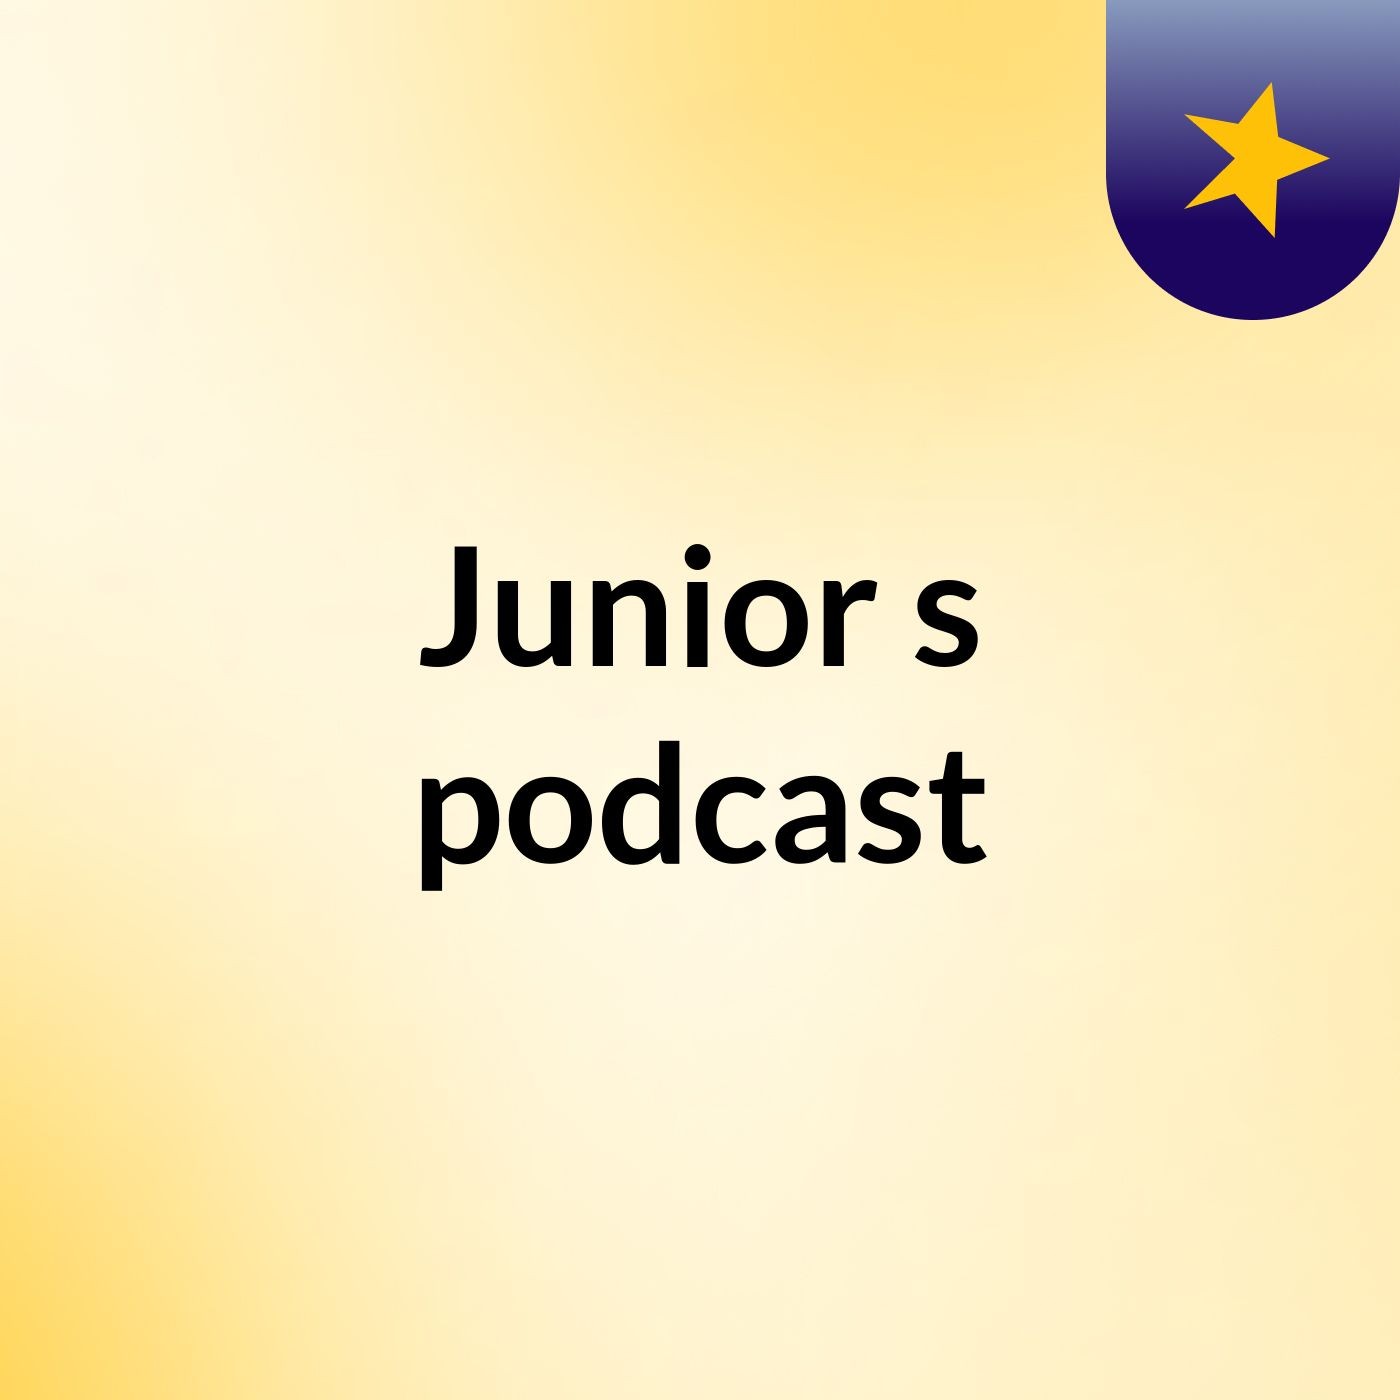 Junior's podcast